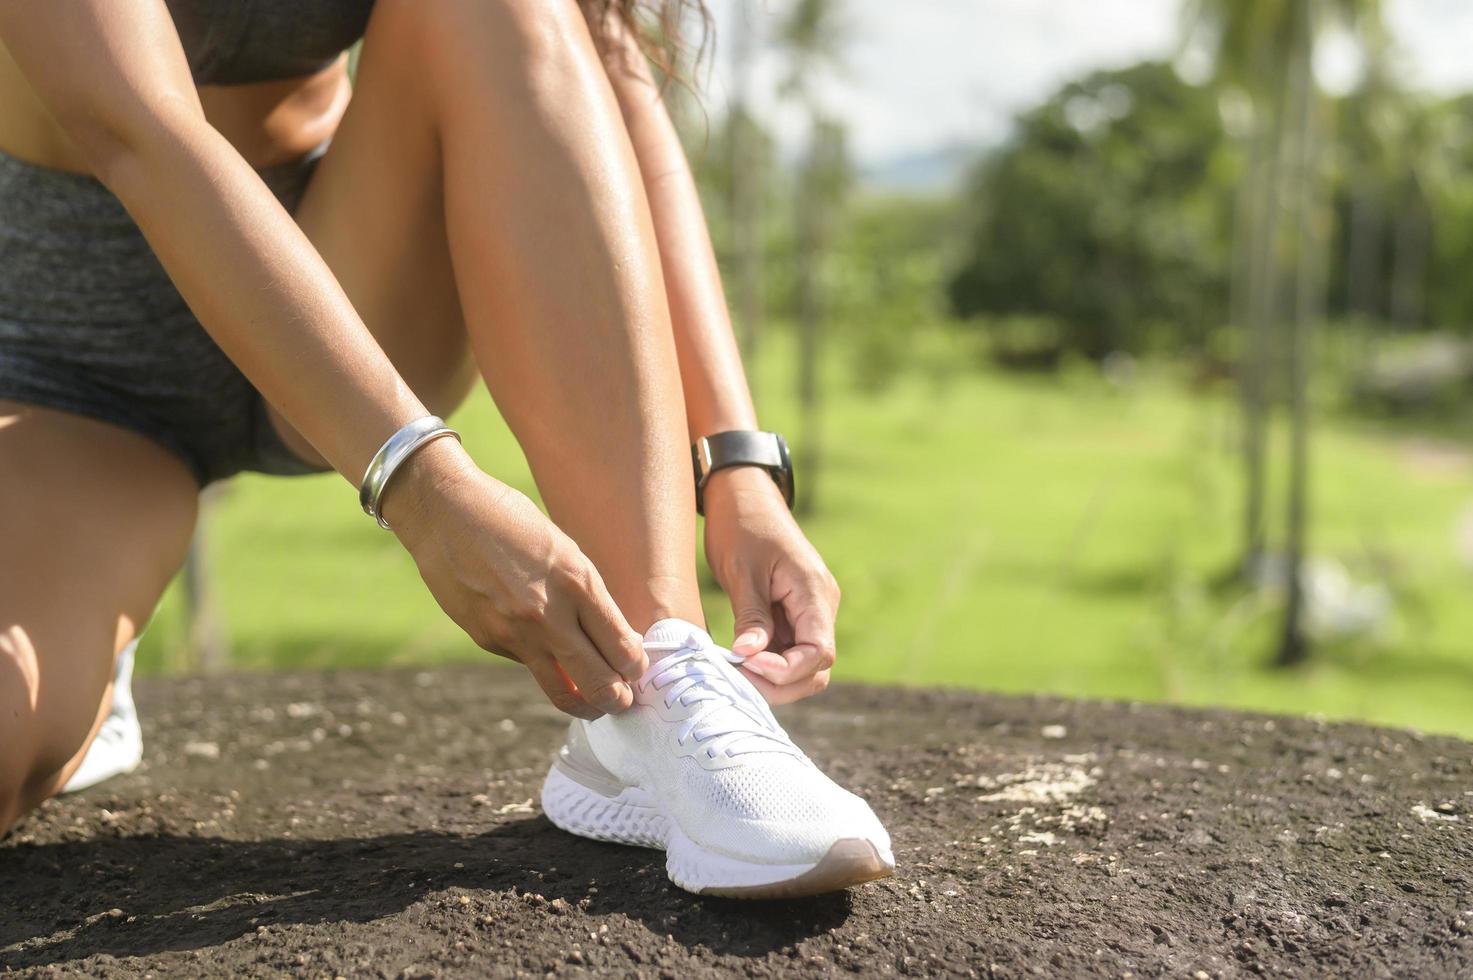 belle femme en forme de vêtements de sport attachant des lacets de chaussures préparez-vous pour l'exercice, la santé et le concept de sport. photo